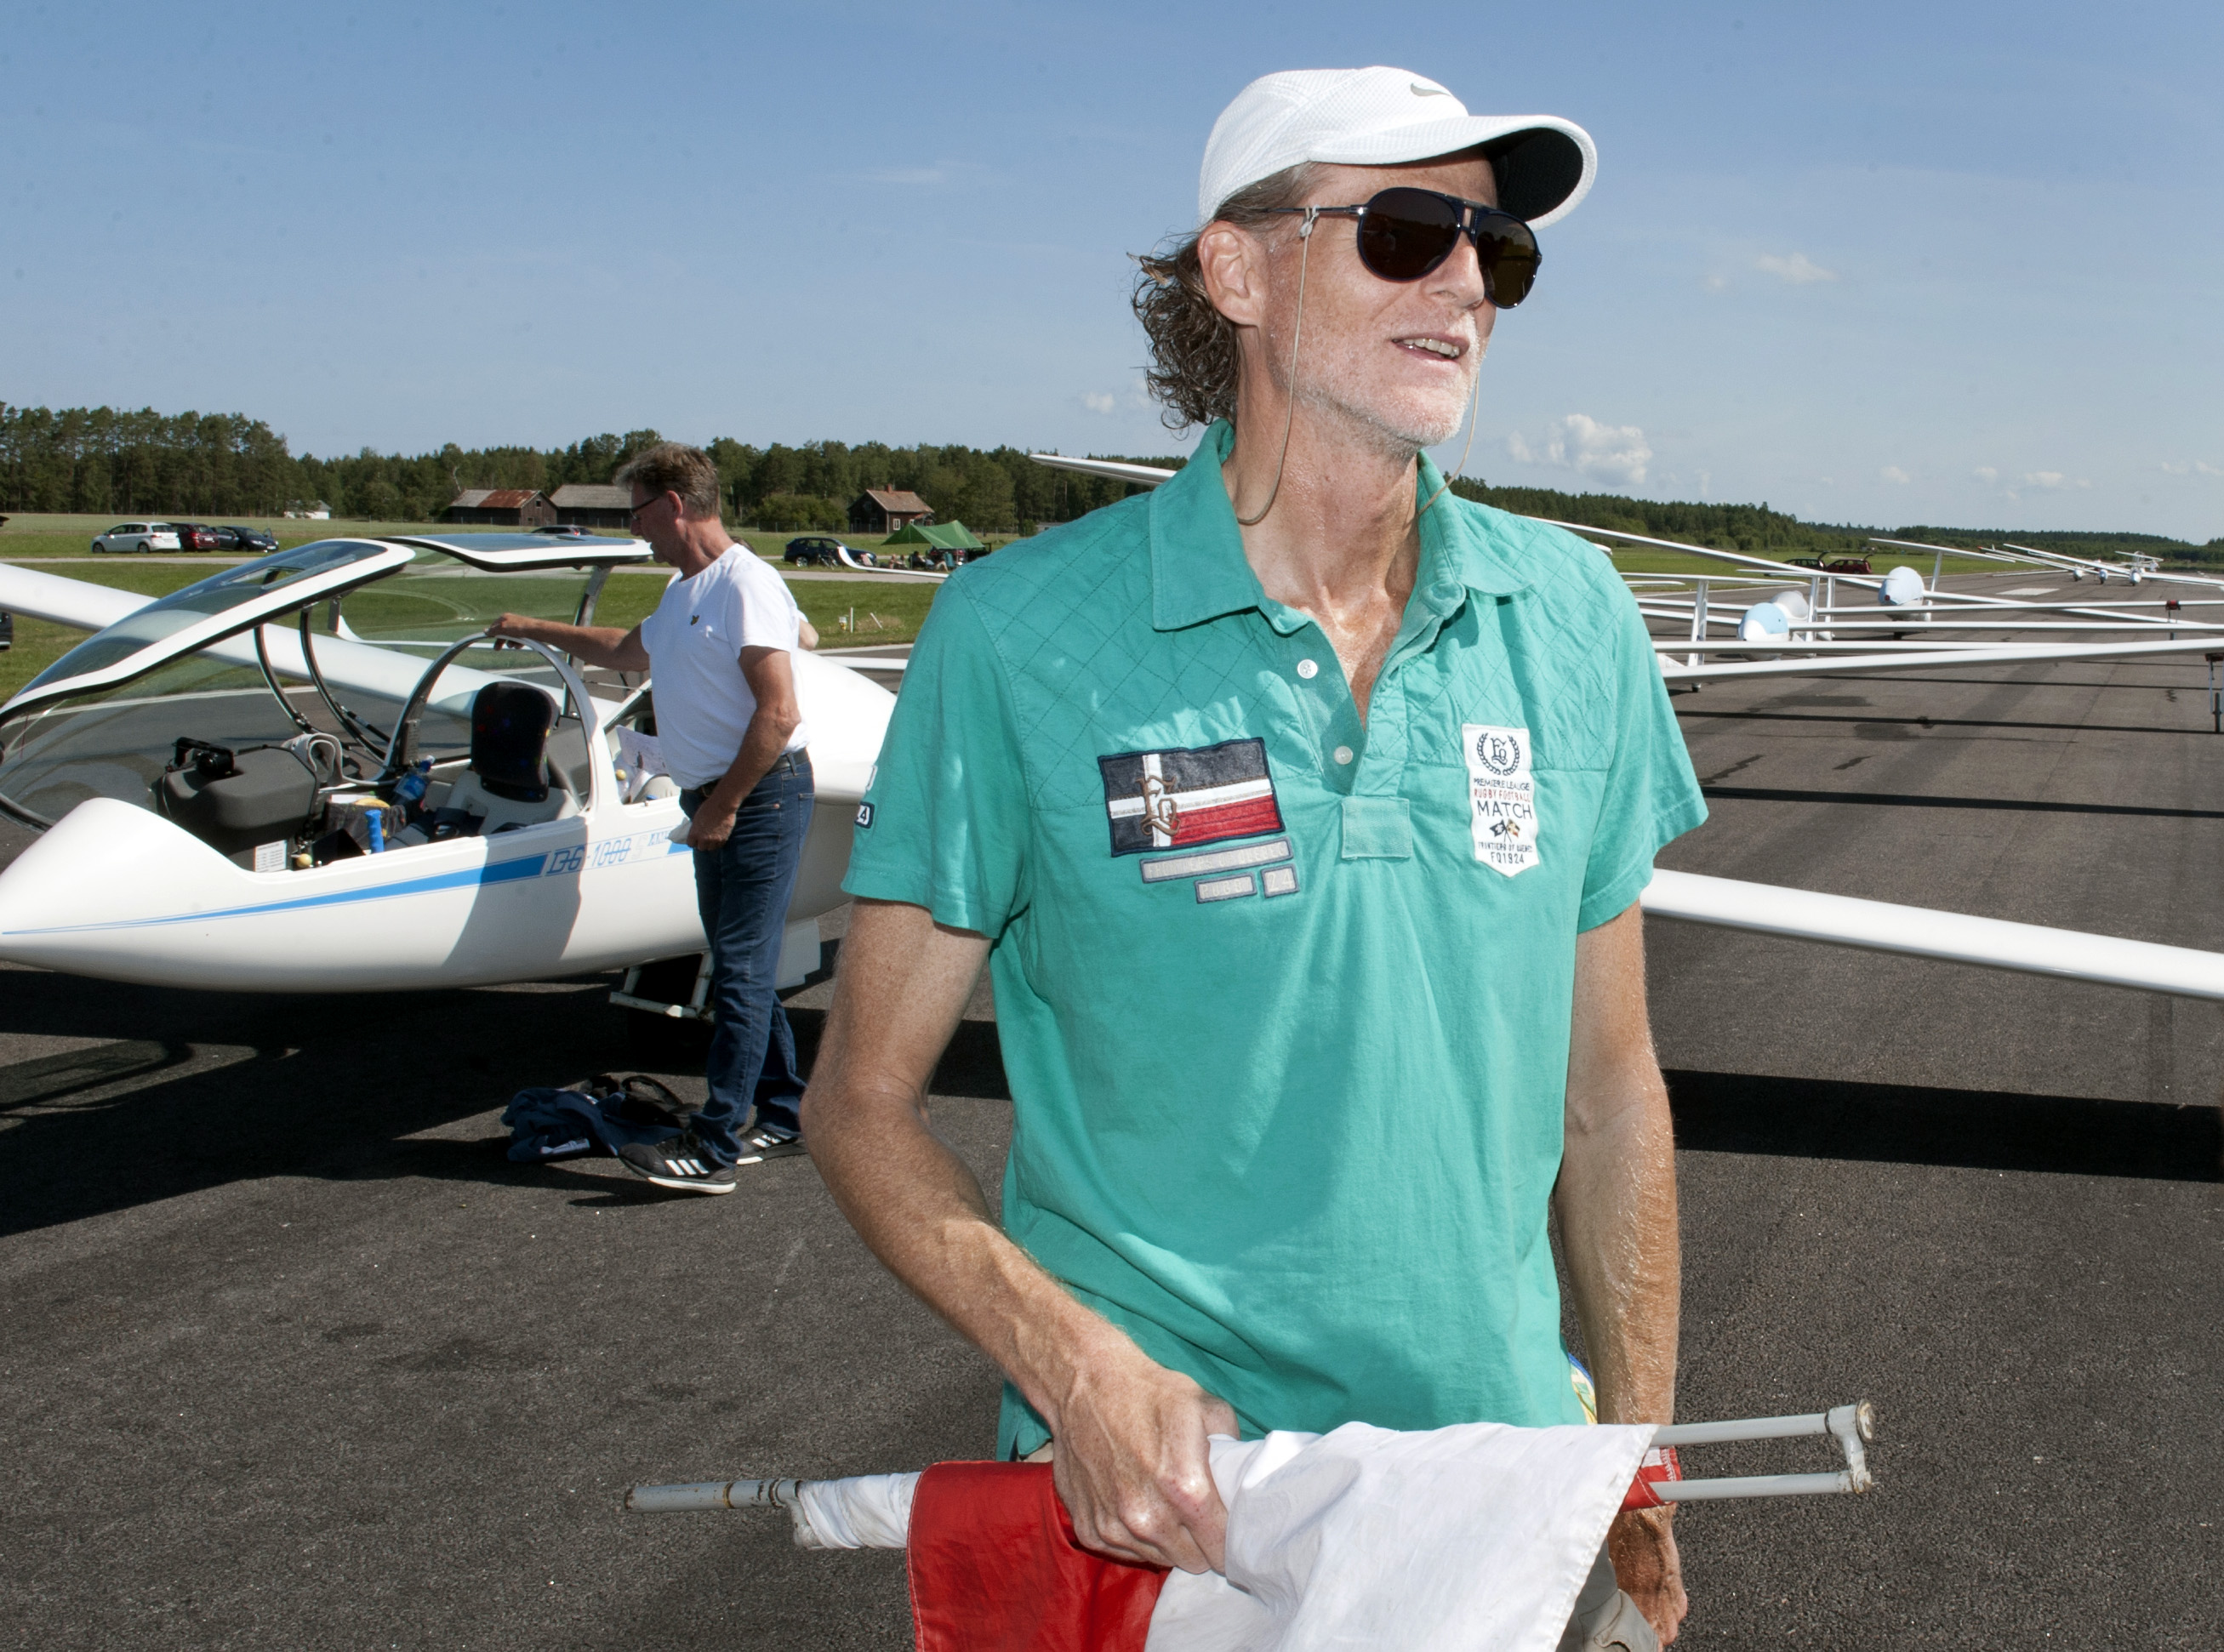 Michael Köster är hängiven segelflygare och dessutom läkare med stor kunskap om Covid-19 och dess effekter. Här ger han sin bild av hur flygsporterna kan komma att påverkas av smittan. Bilden är från DM i segelflyg 2019, då Michael var med som funktionär. Foto: Janne Andersson.